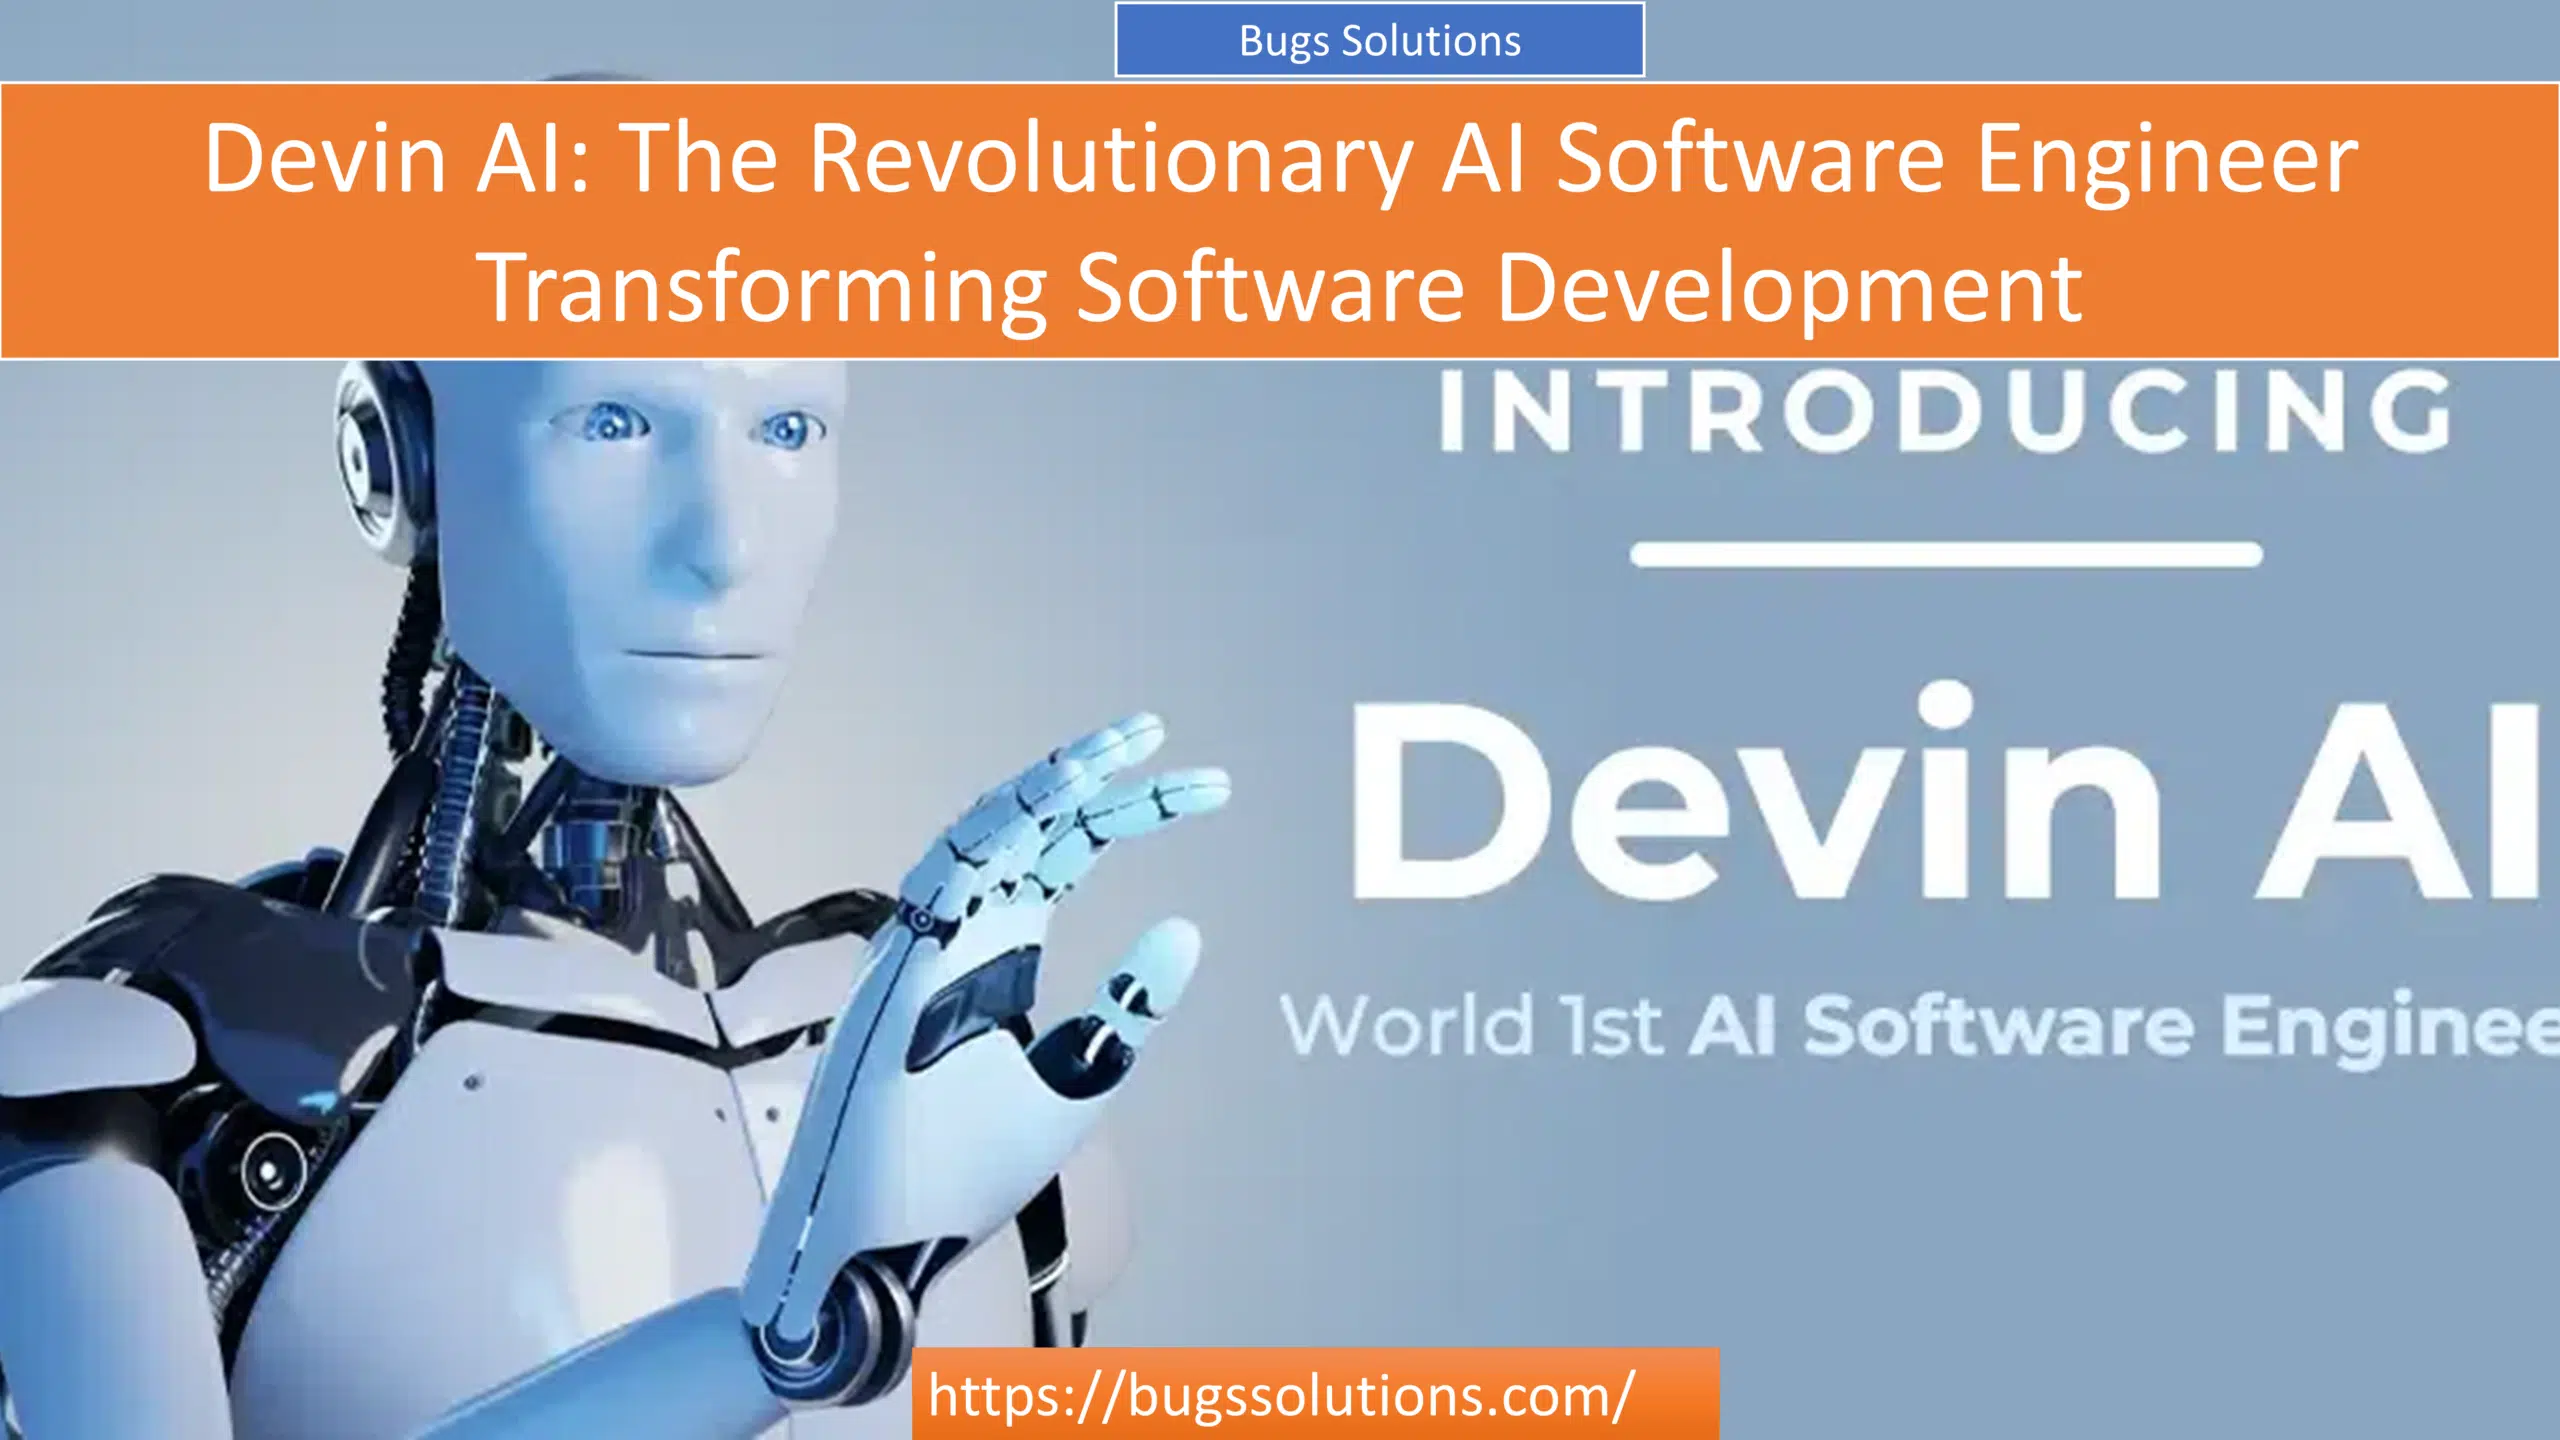 Devin AI: The Revolutionary AI Software Engineer Transforming Software Development